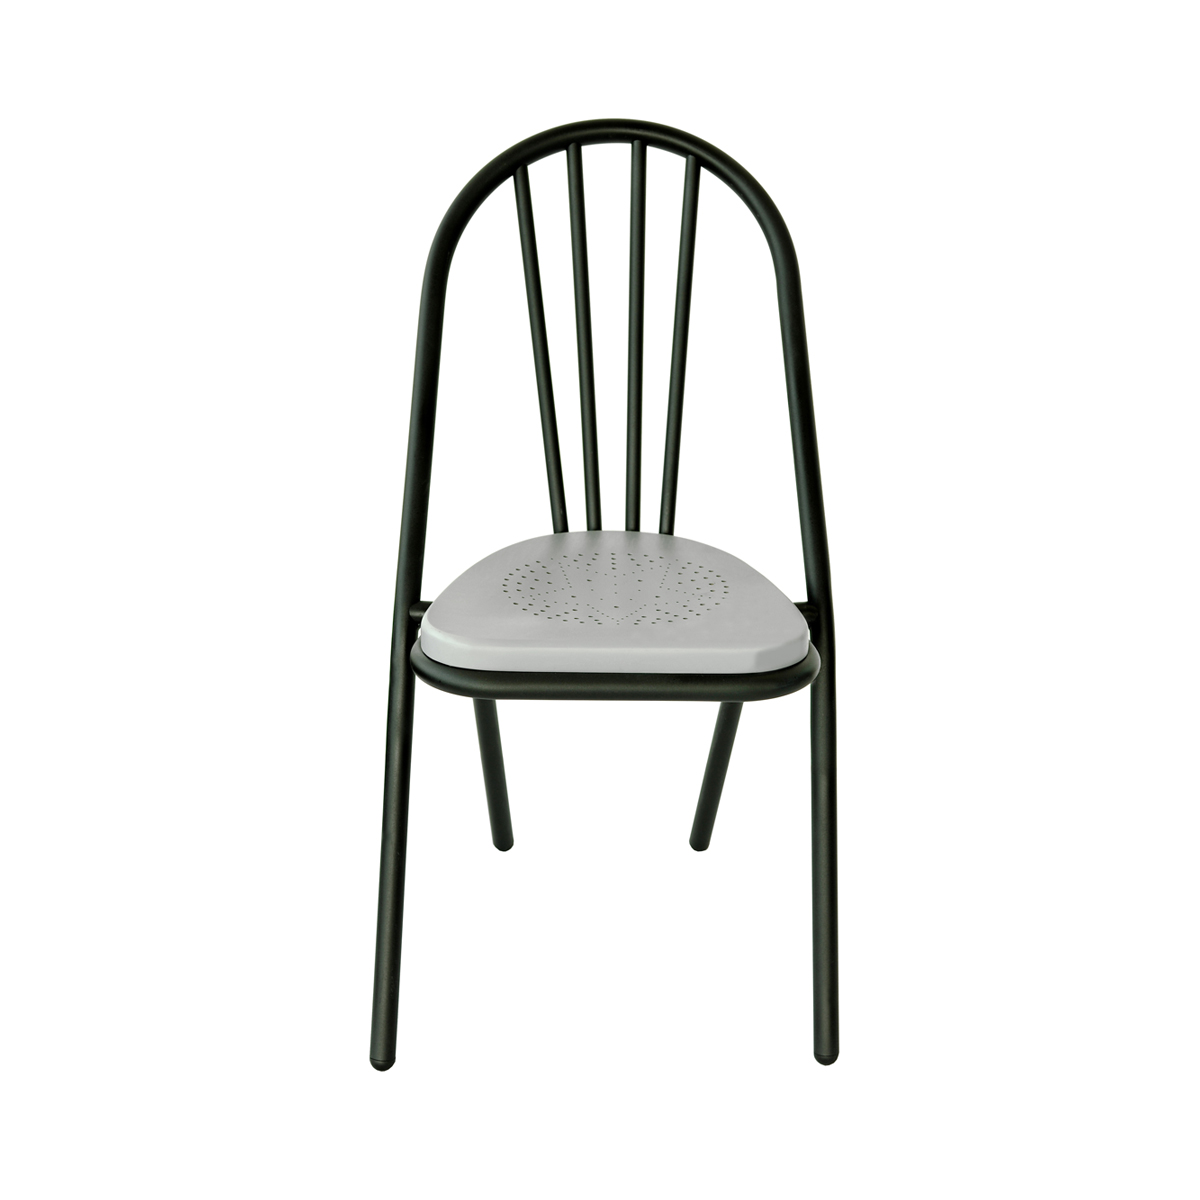 Surpil Chair